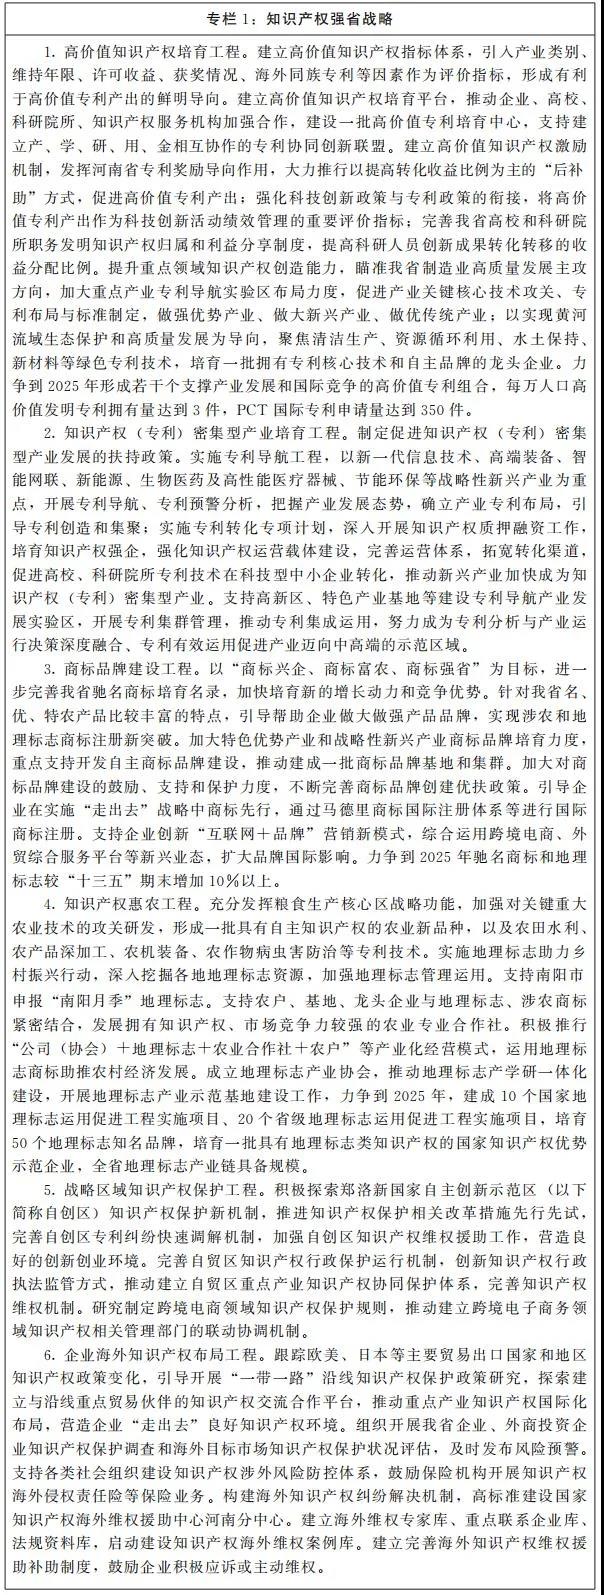 河南：将申建洛阳、商丘、漯河等国家级知识产权保护和维权平台